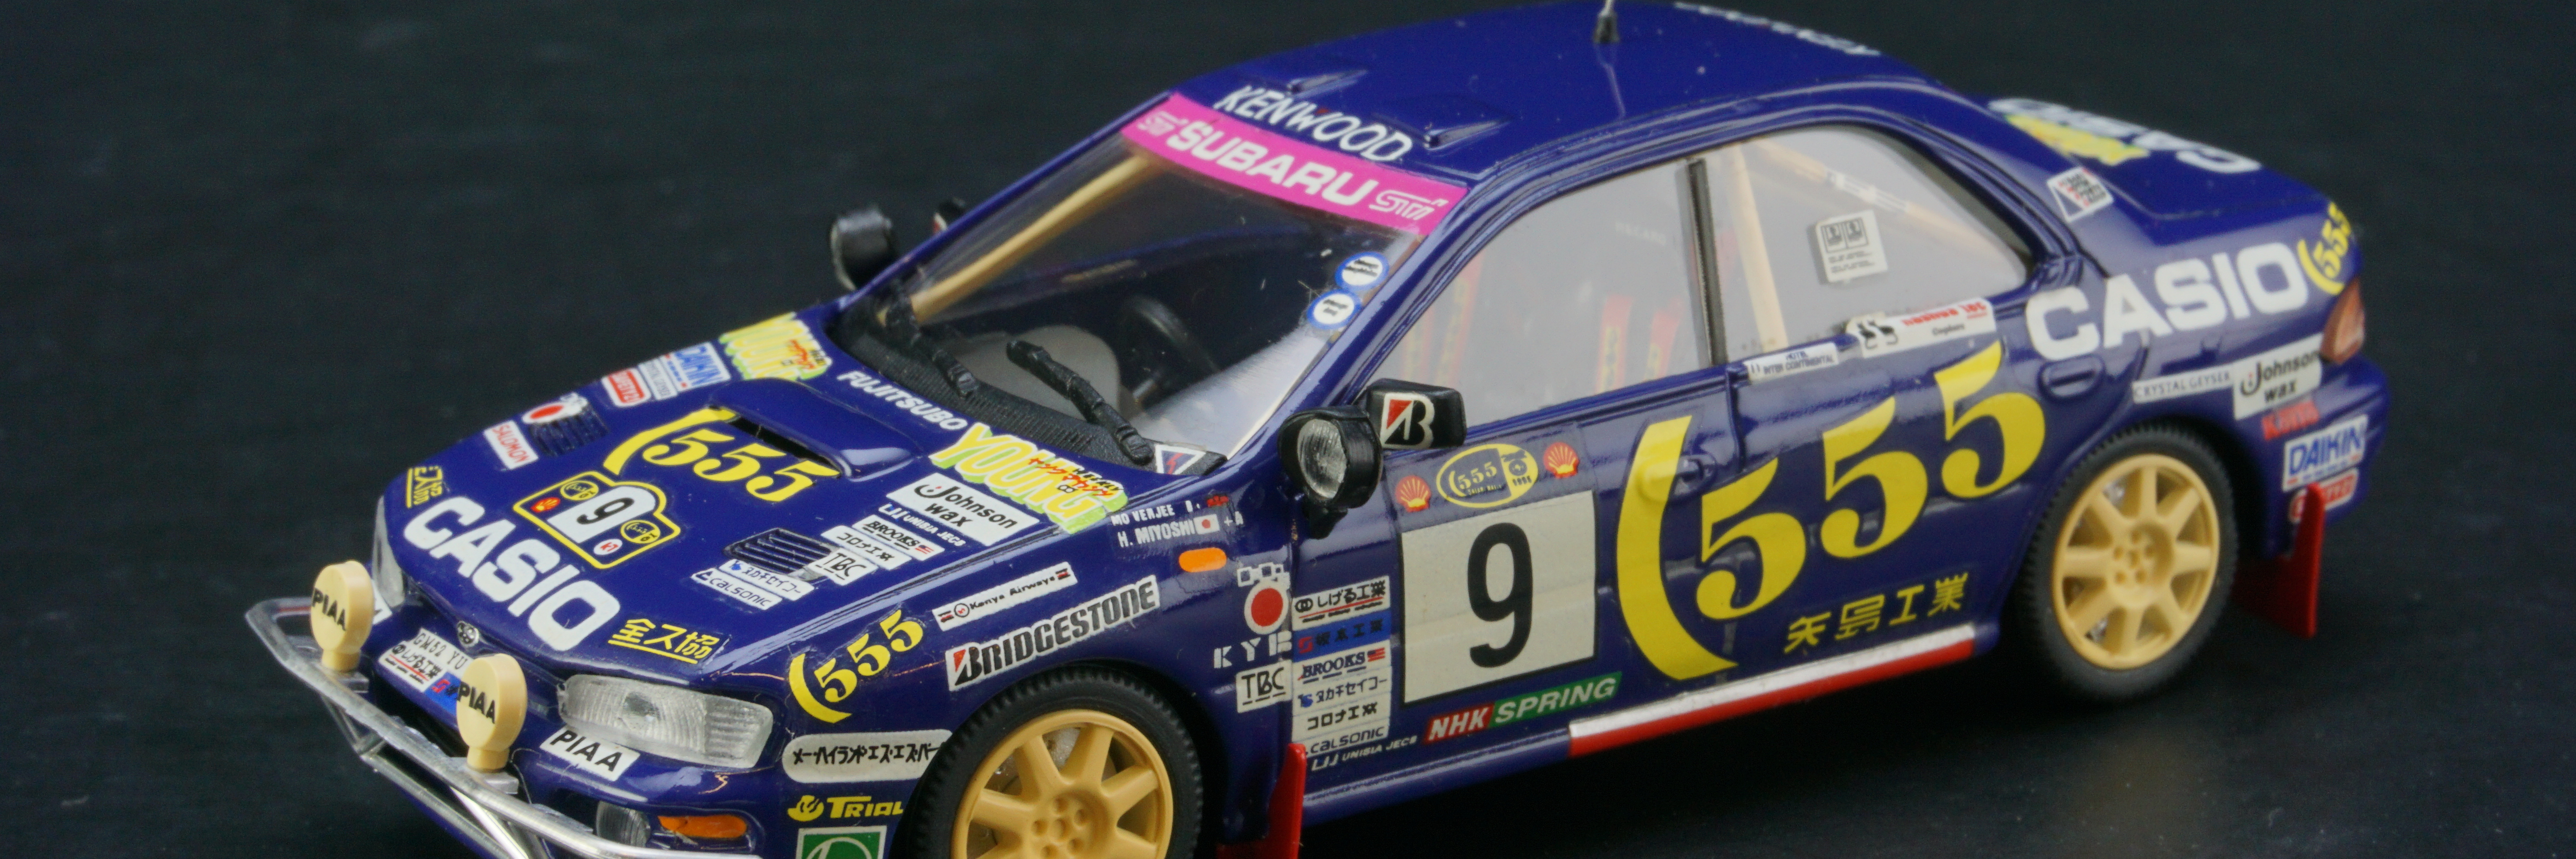 1995斯巴鲁翼豹拉力赛冠军车